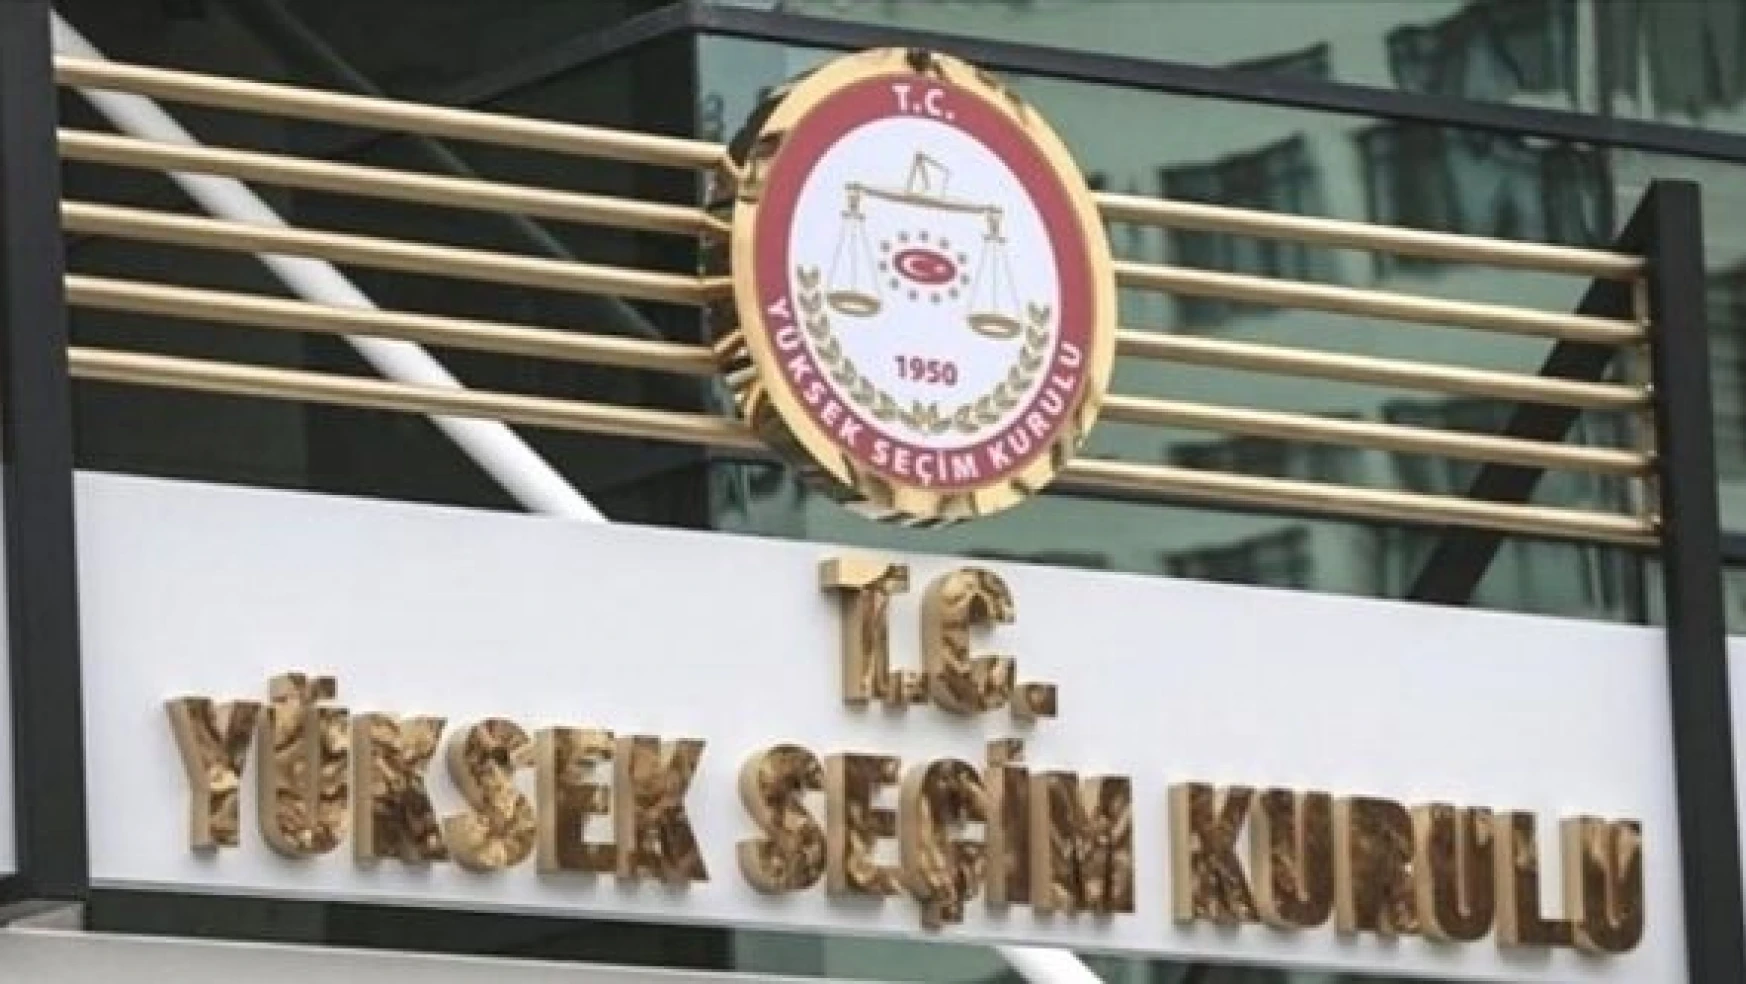 Yeni YSK Başkanı Ahmet Yener oldu